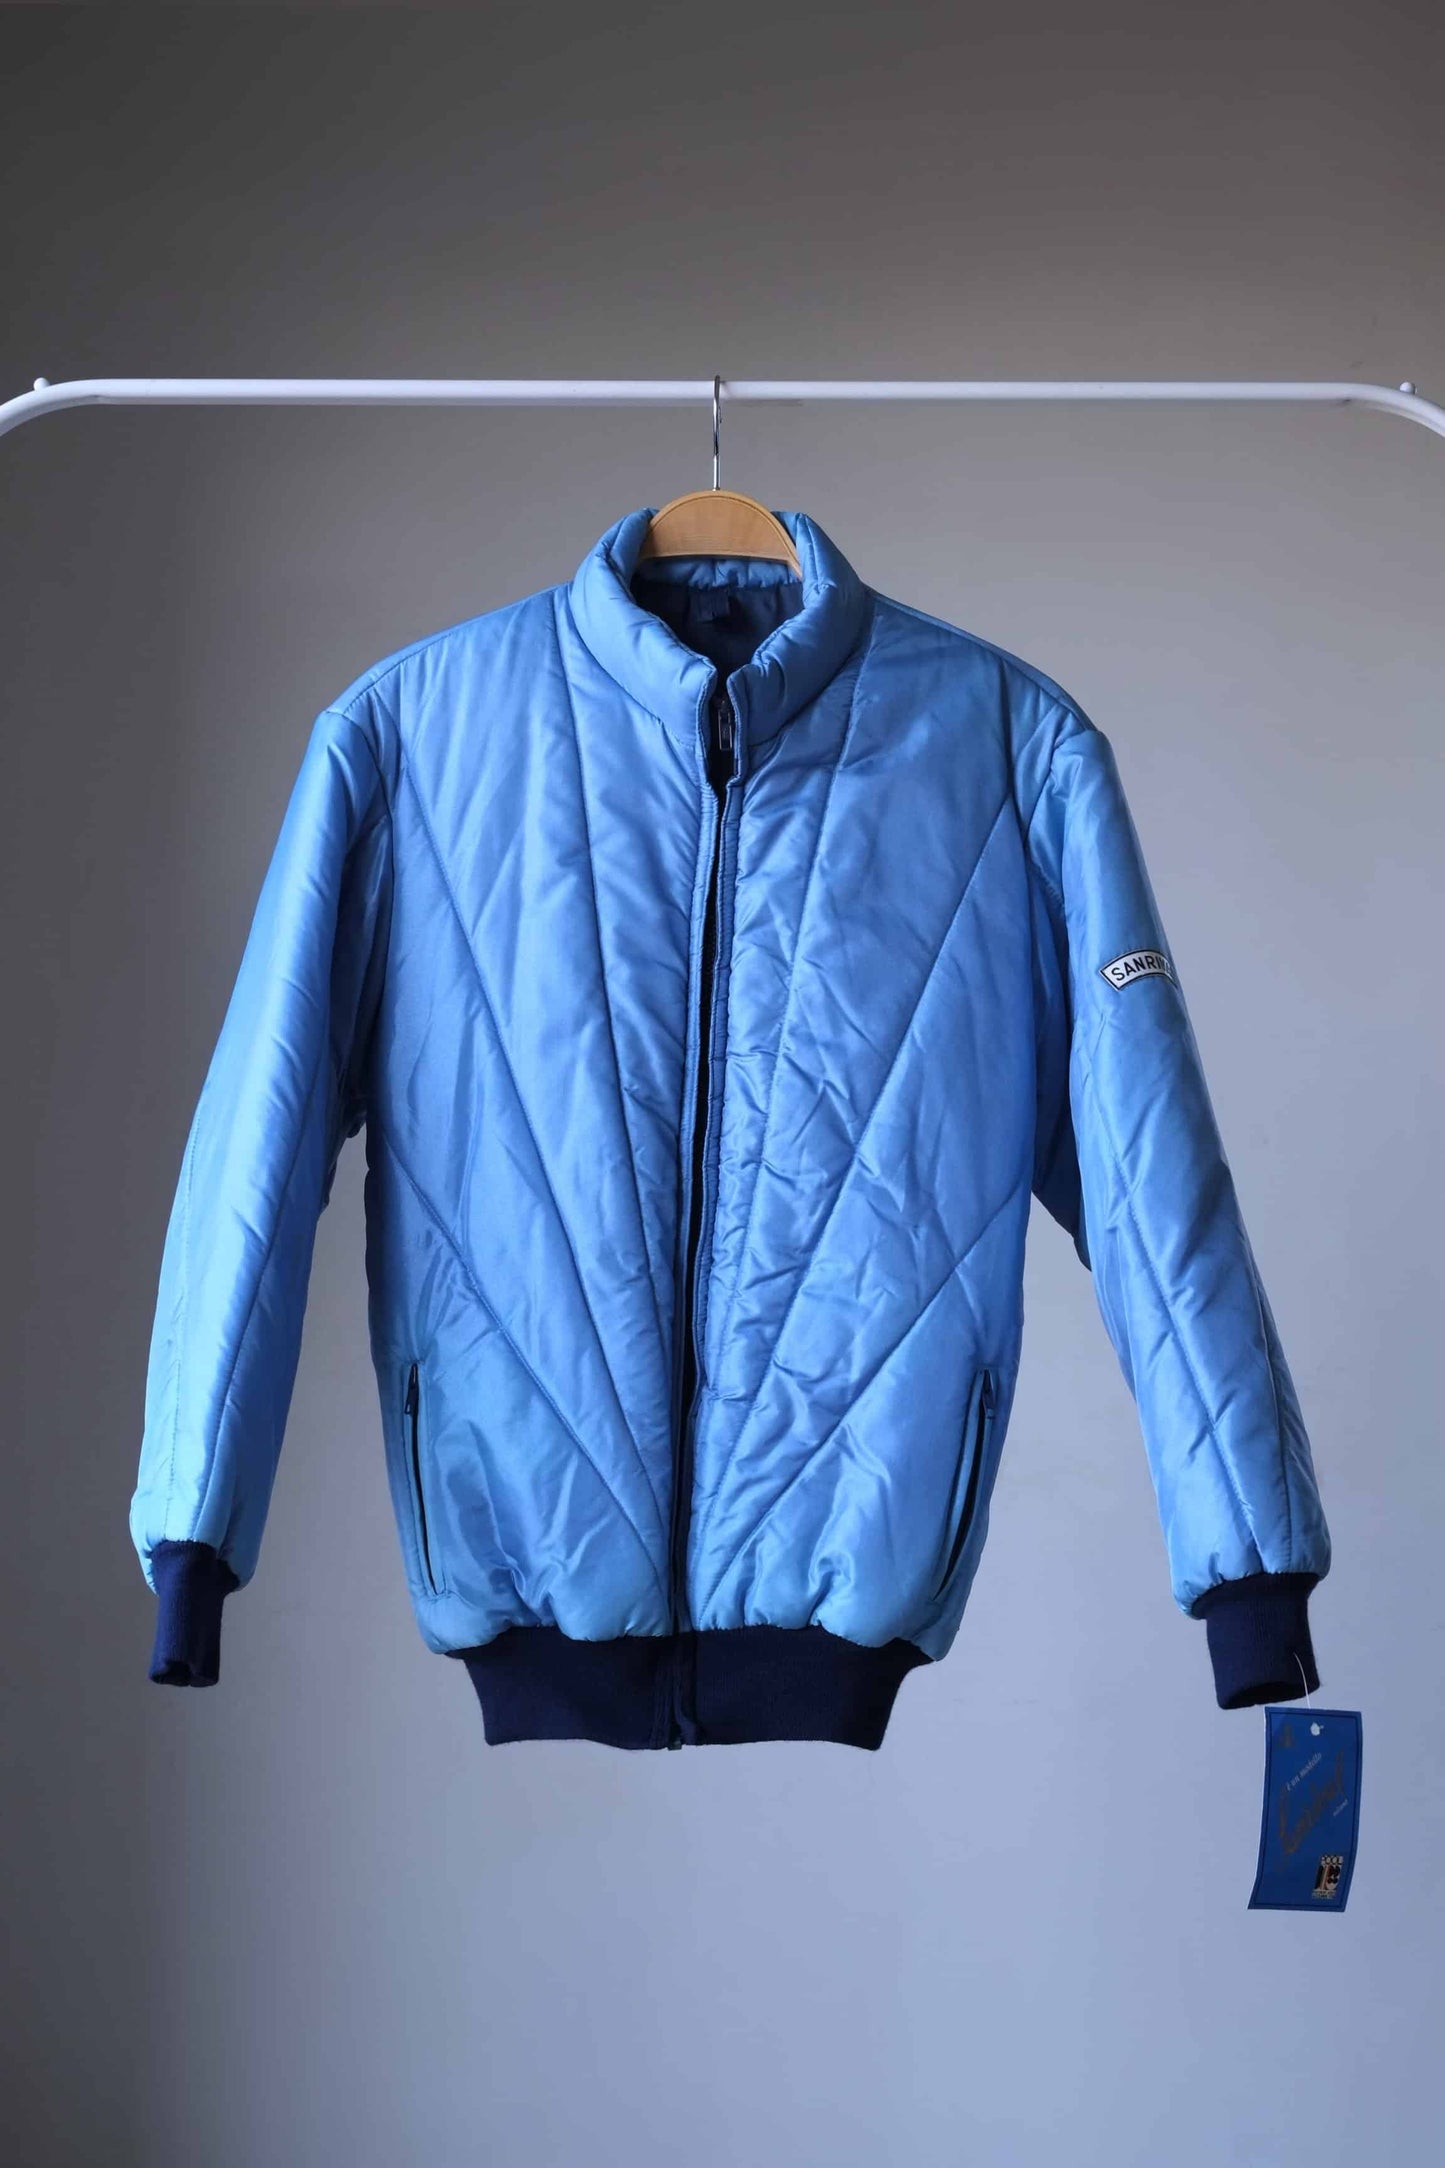 SANRIVAL Vintage 70's Ski Jacket on hanger. color: mettalic blue. 